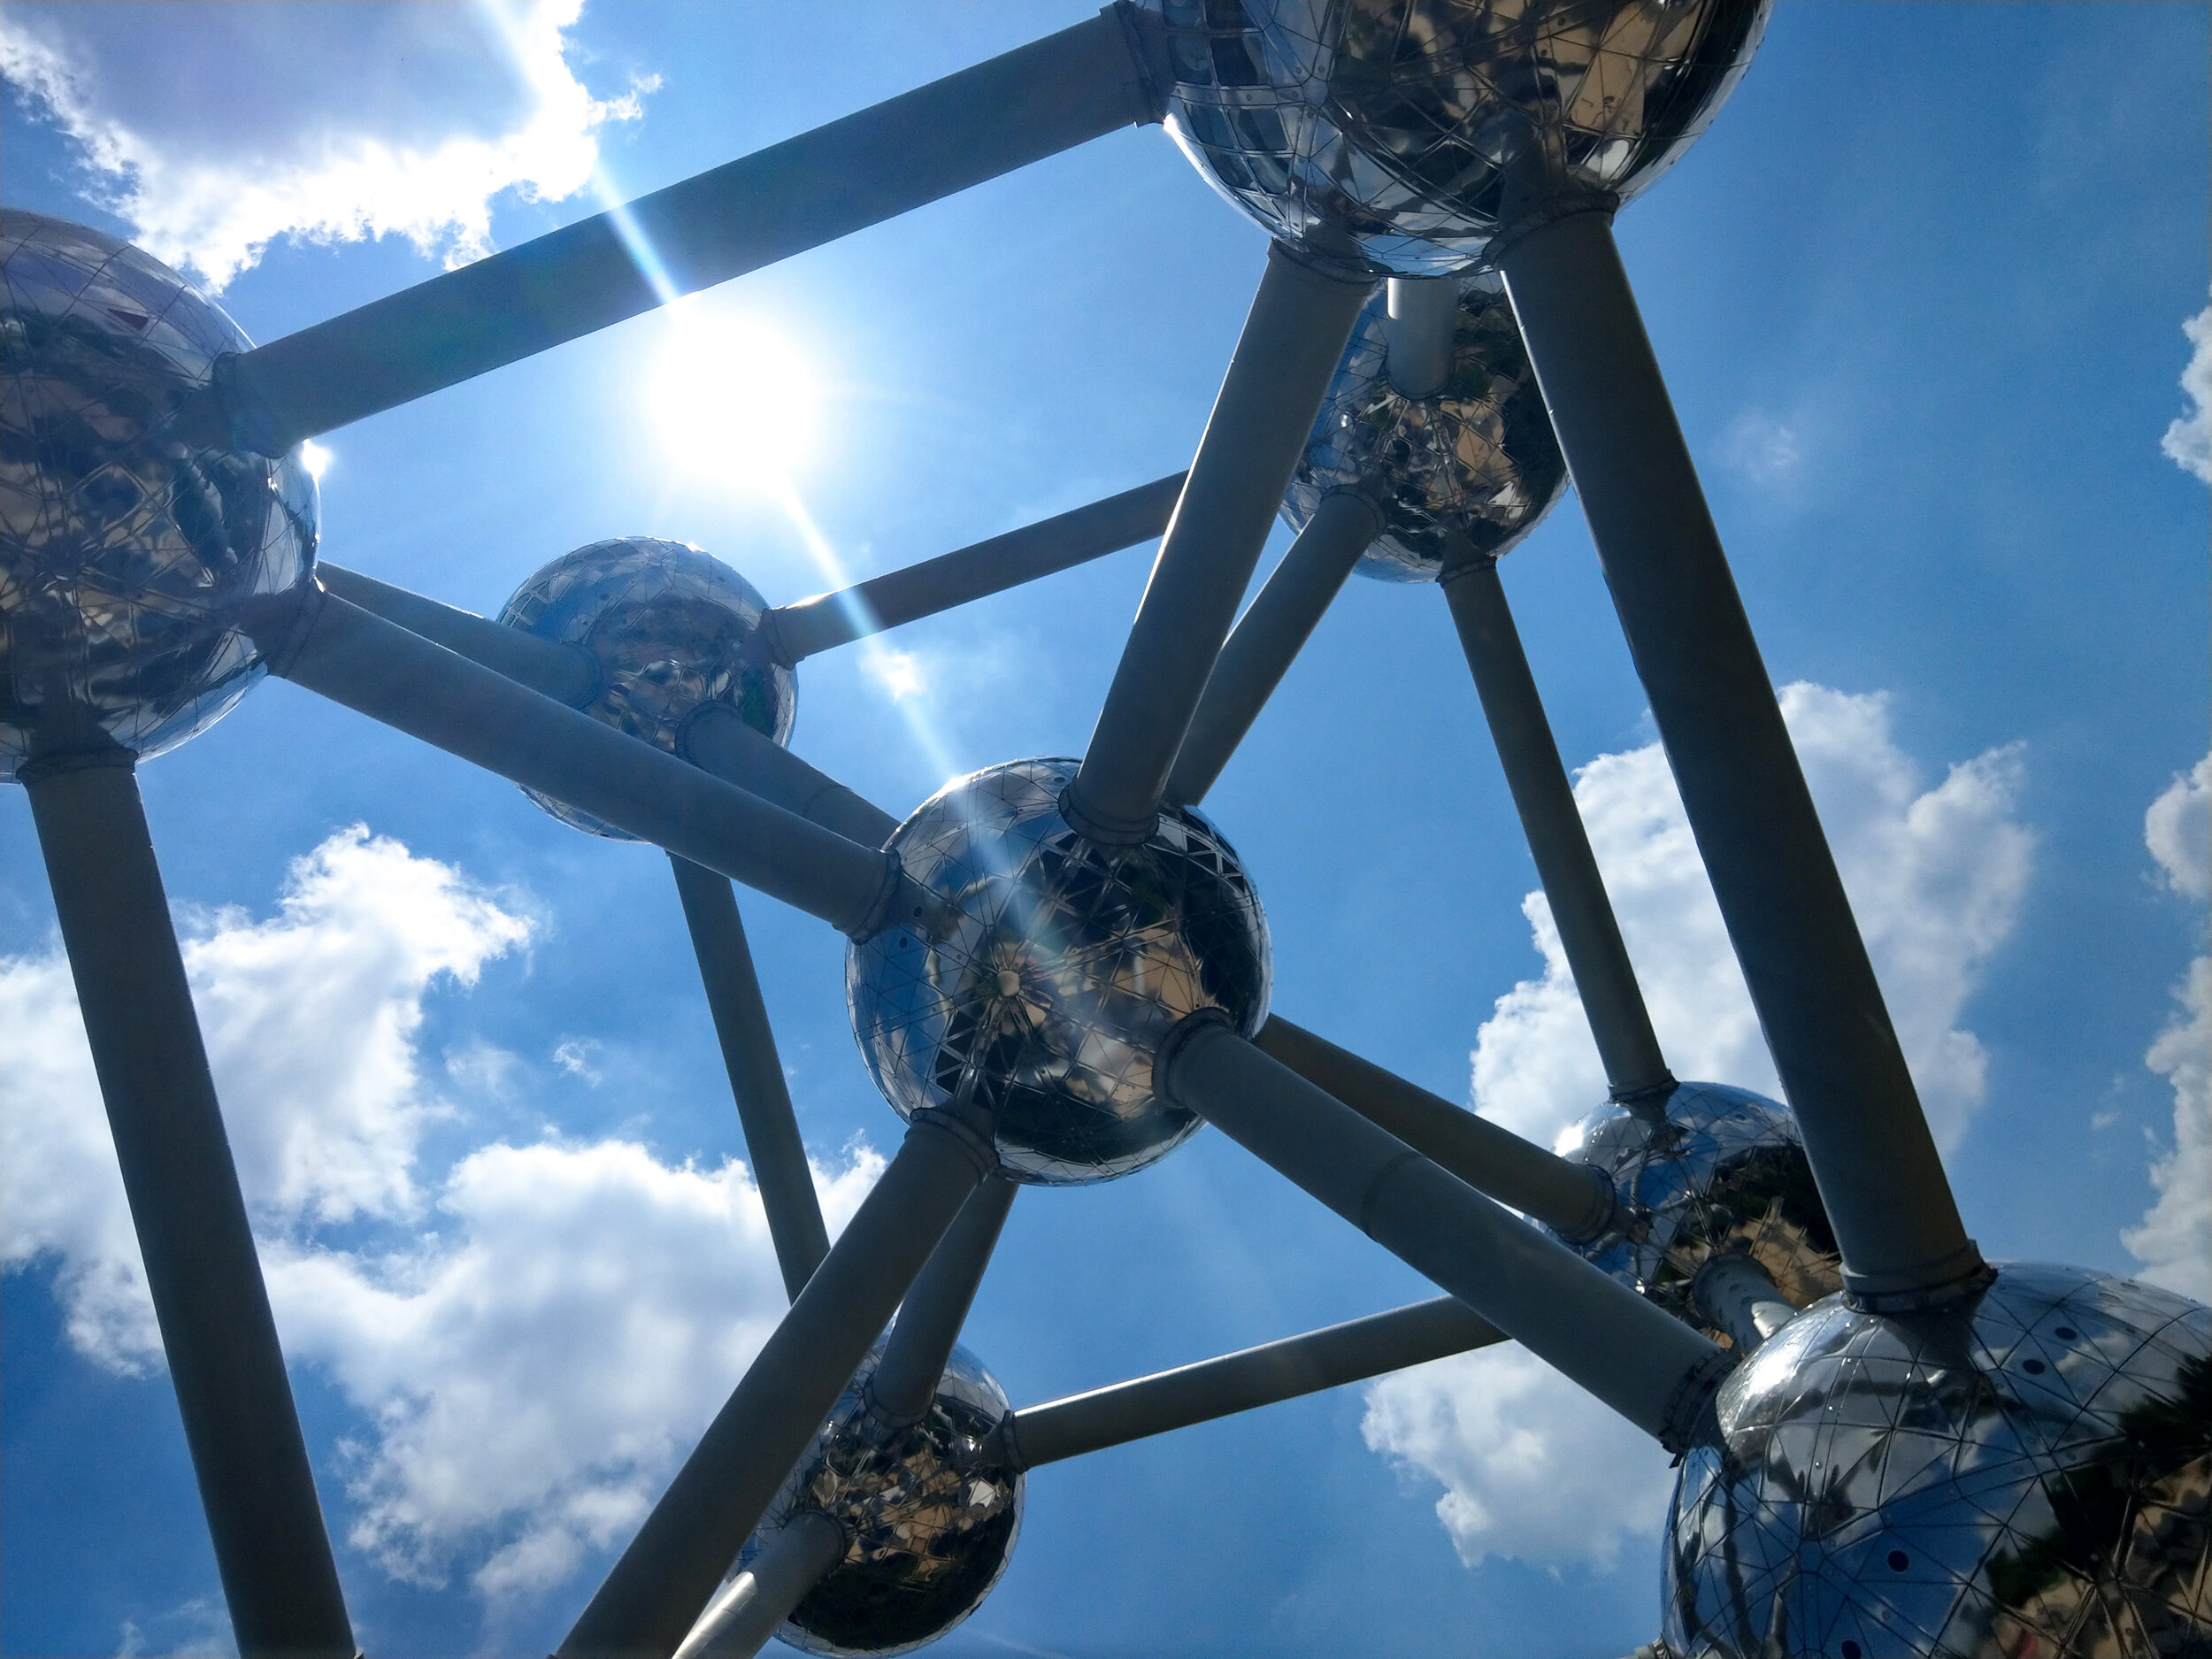 Brussels Atomium, Belgium 2